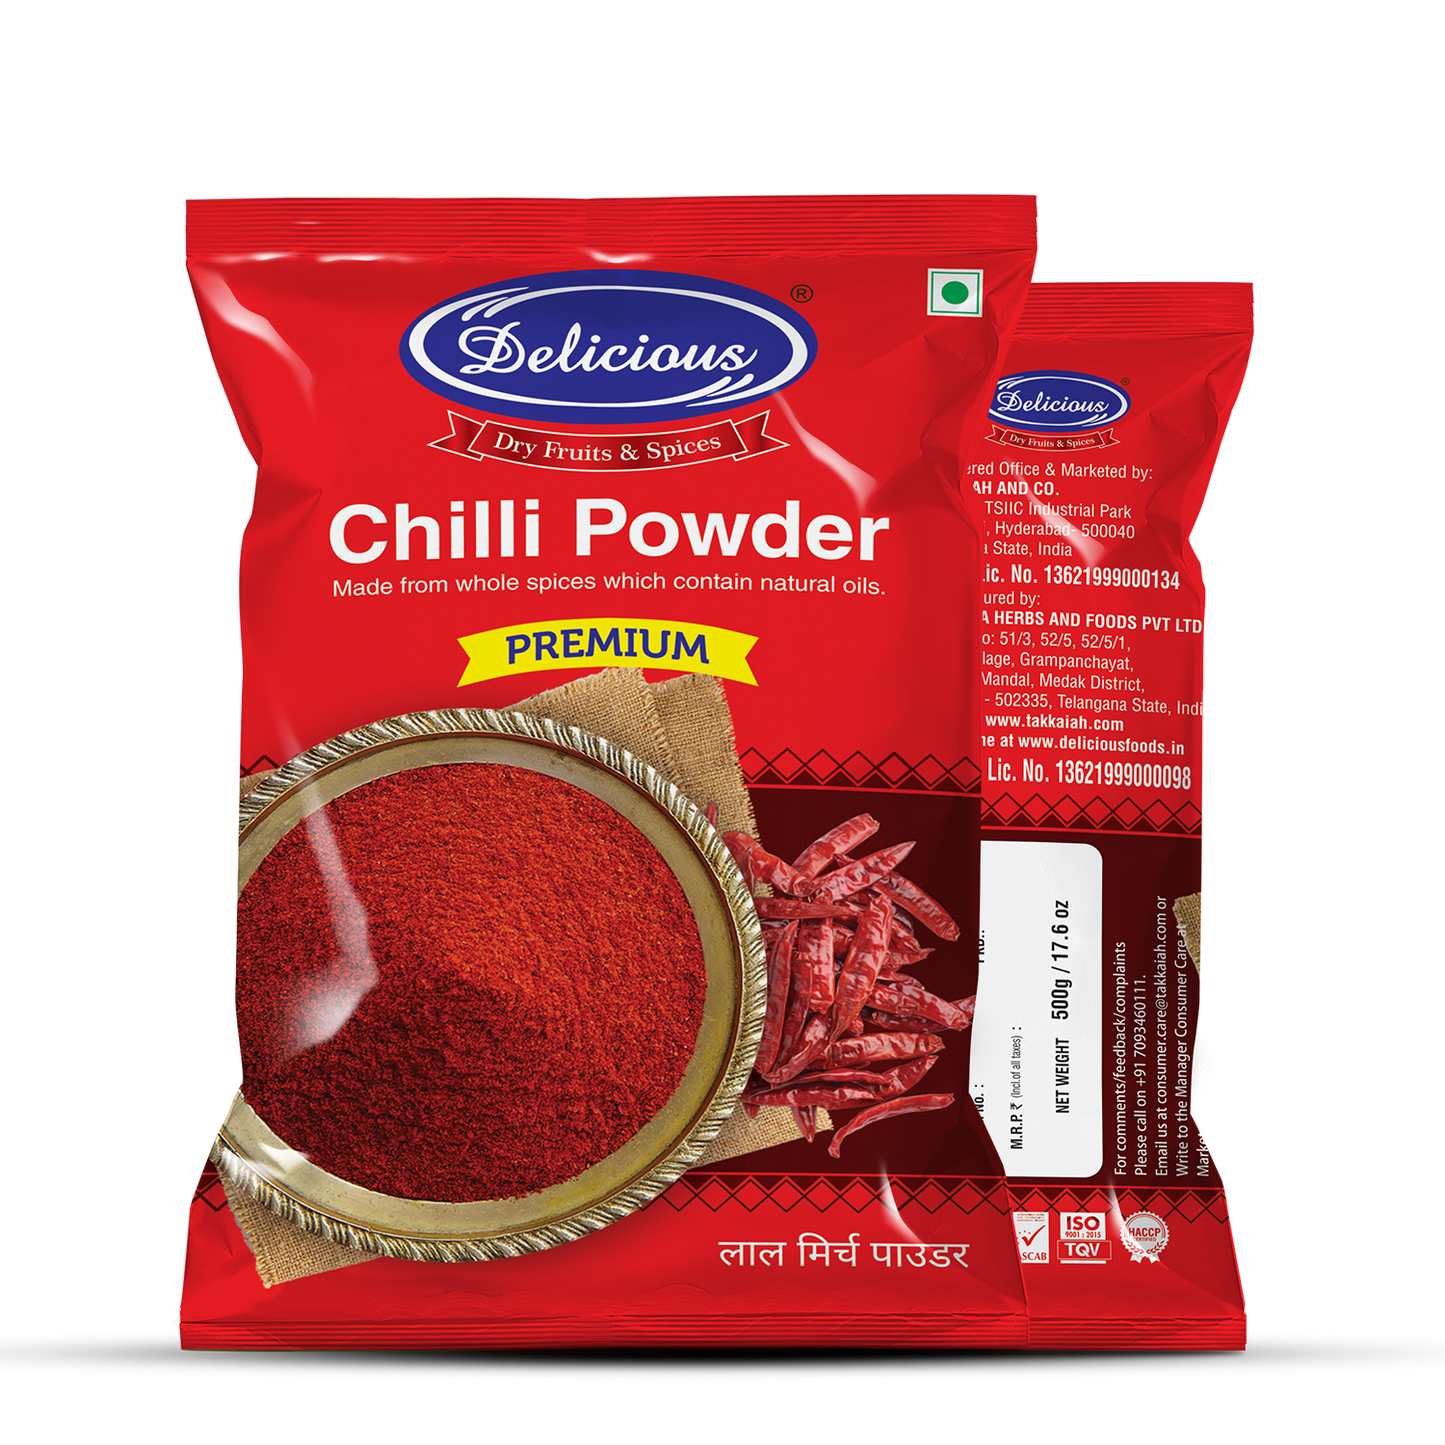 Delicious Chilli Powder